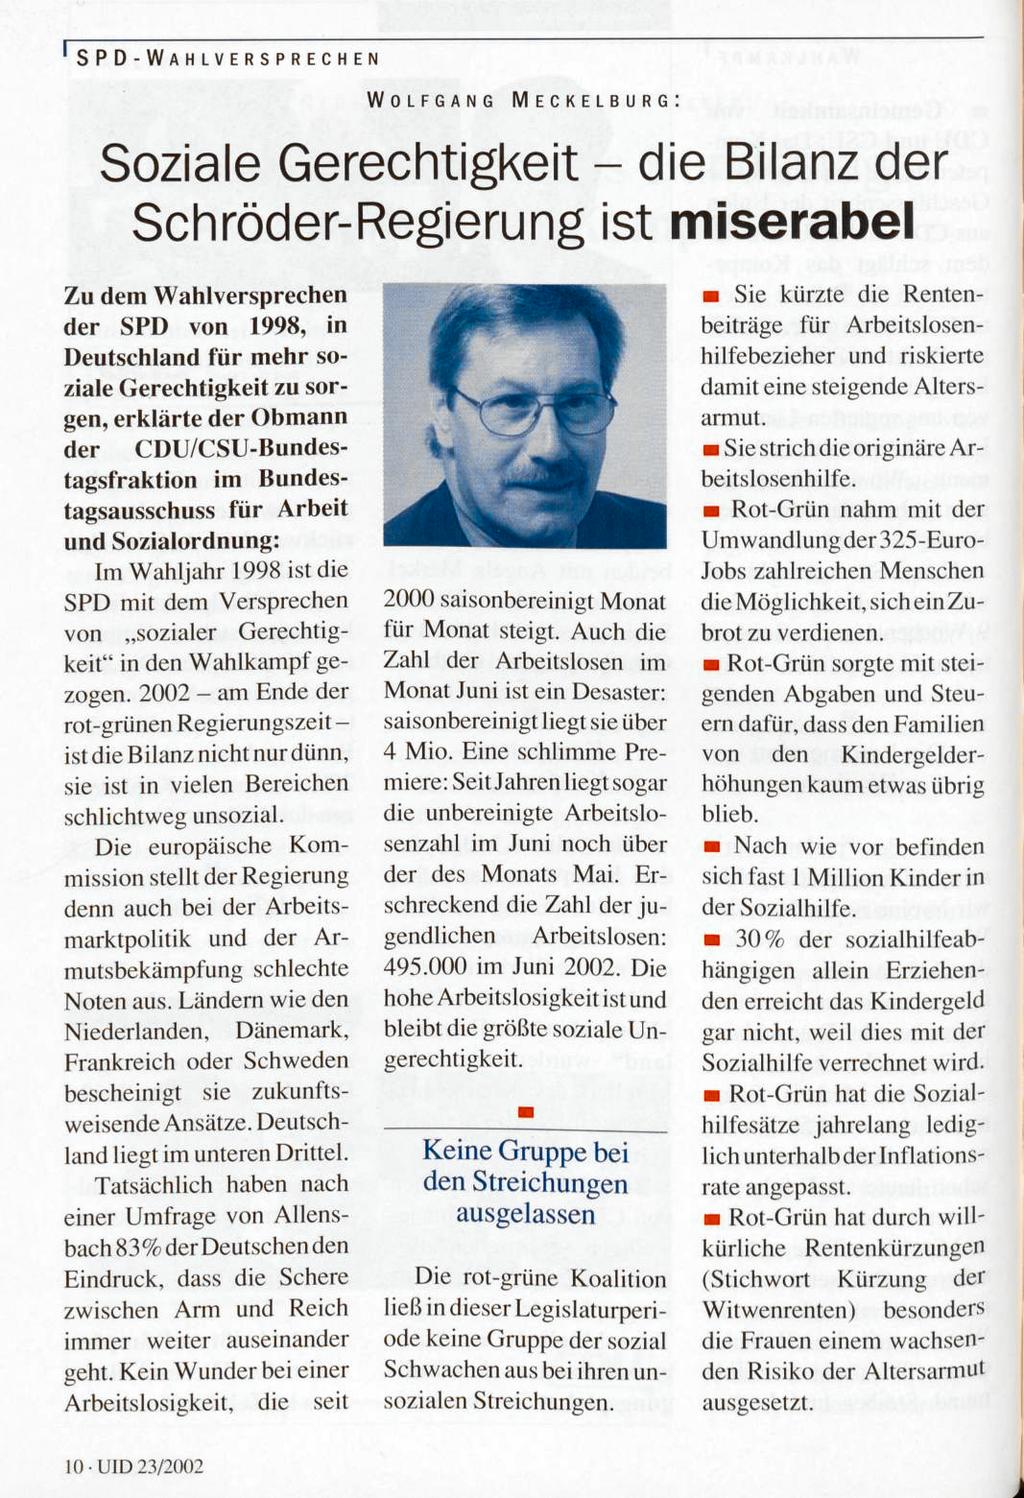 1 SPD-WAHLVERSPRECHEN WOLFGANG MECKELBURG: Soziale Gerechtigkeit - die Bilanz der Schröder-Regierung ist miserabel Zu dem Wahlversprechen der SPD von 1998, in Deutschland für mehr soziale